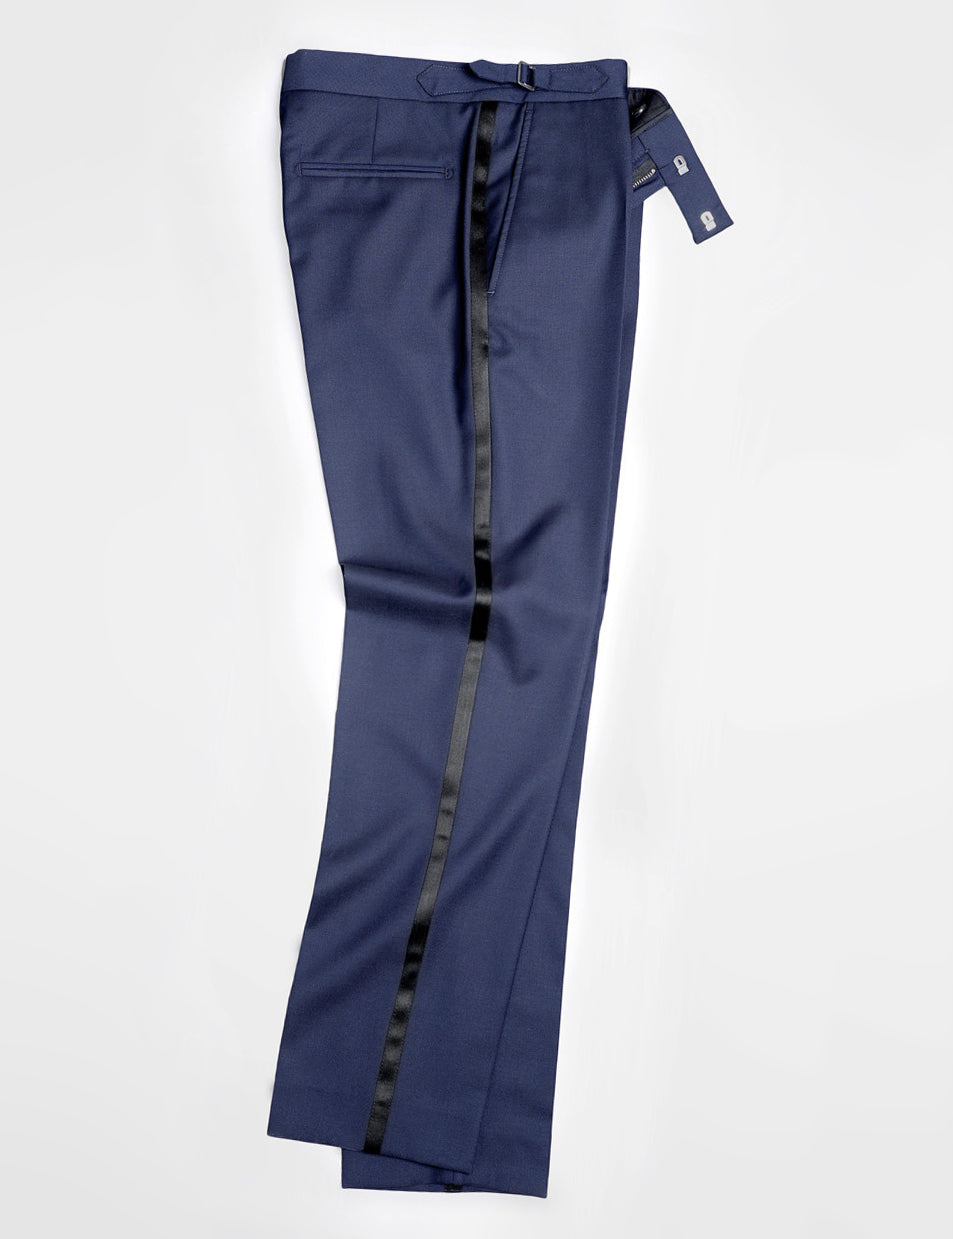 Brooklyn Tailors BKT50 Tuxedo Trouser in Super 110s - Navy with Satin Stripe full length flat shot